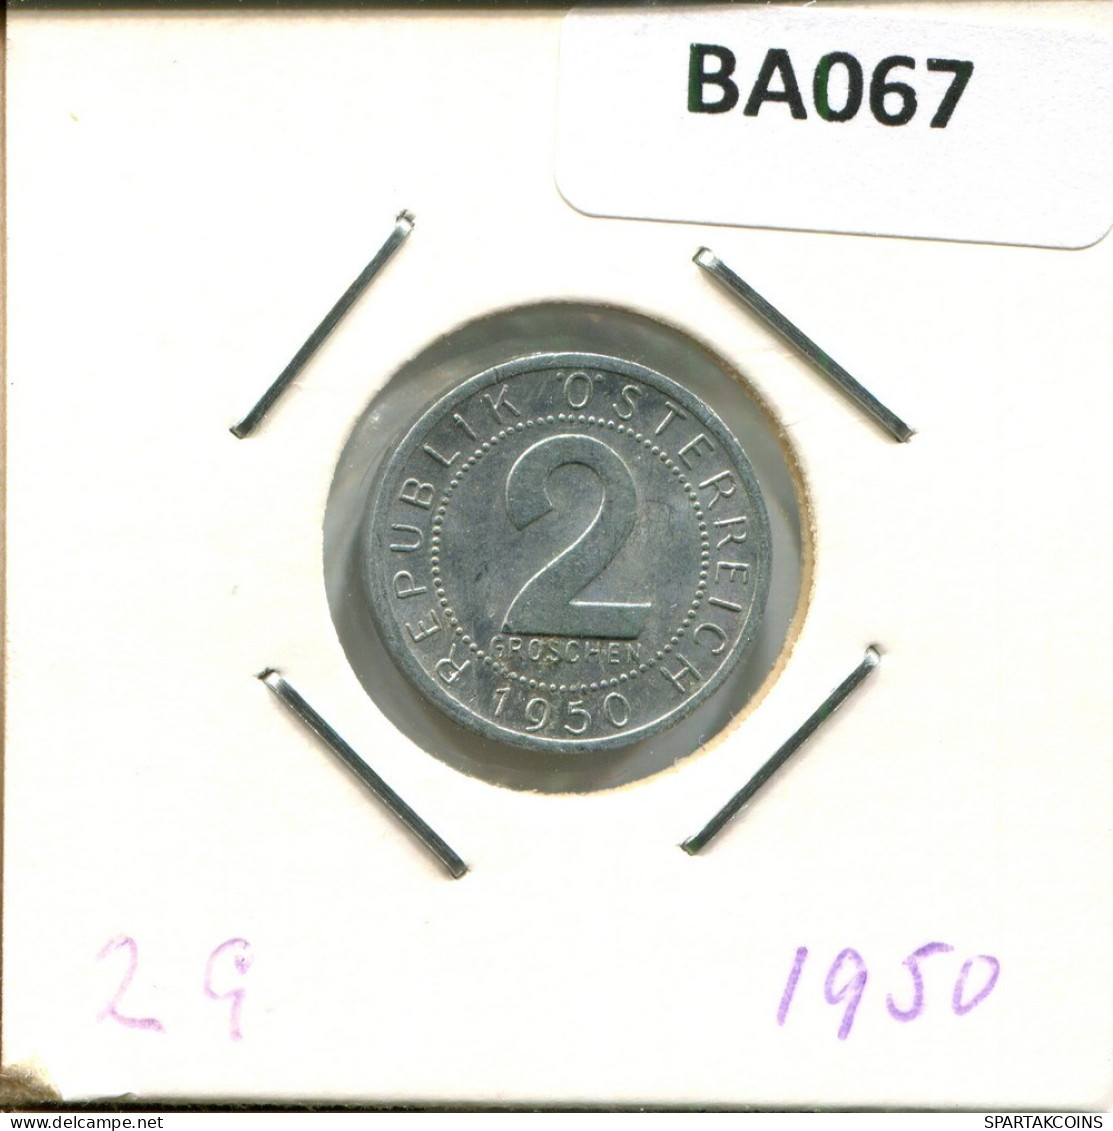 2 GROSCHEN 1950 AUSTRIA Coin #BA067.U.A - Autriche